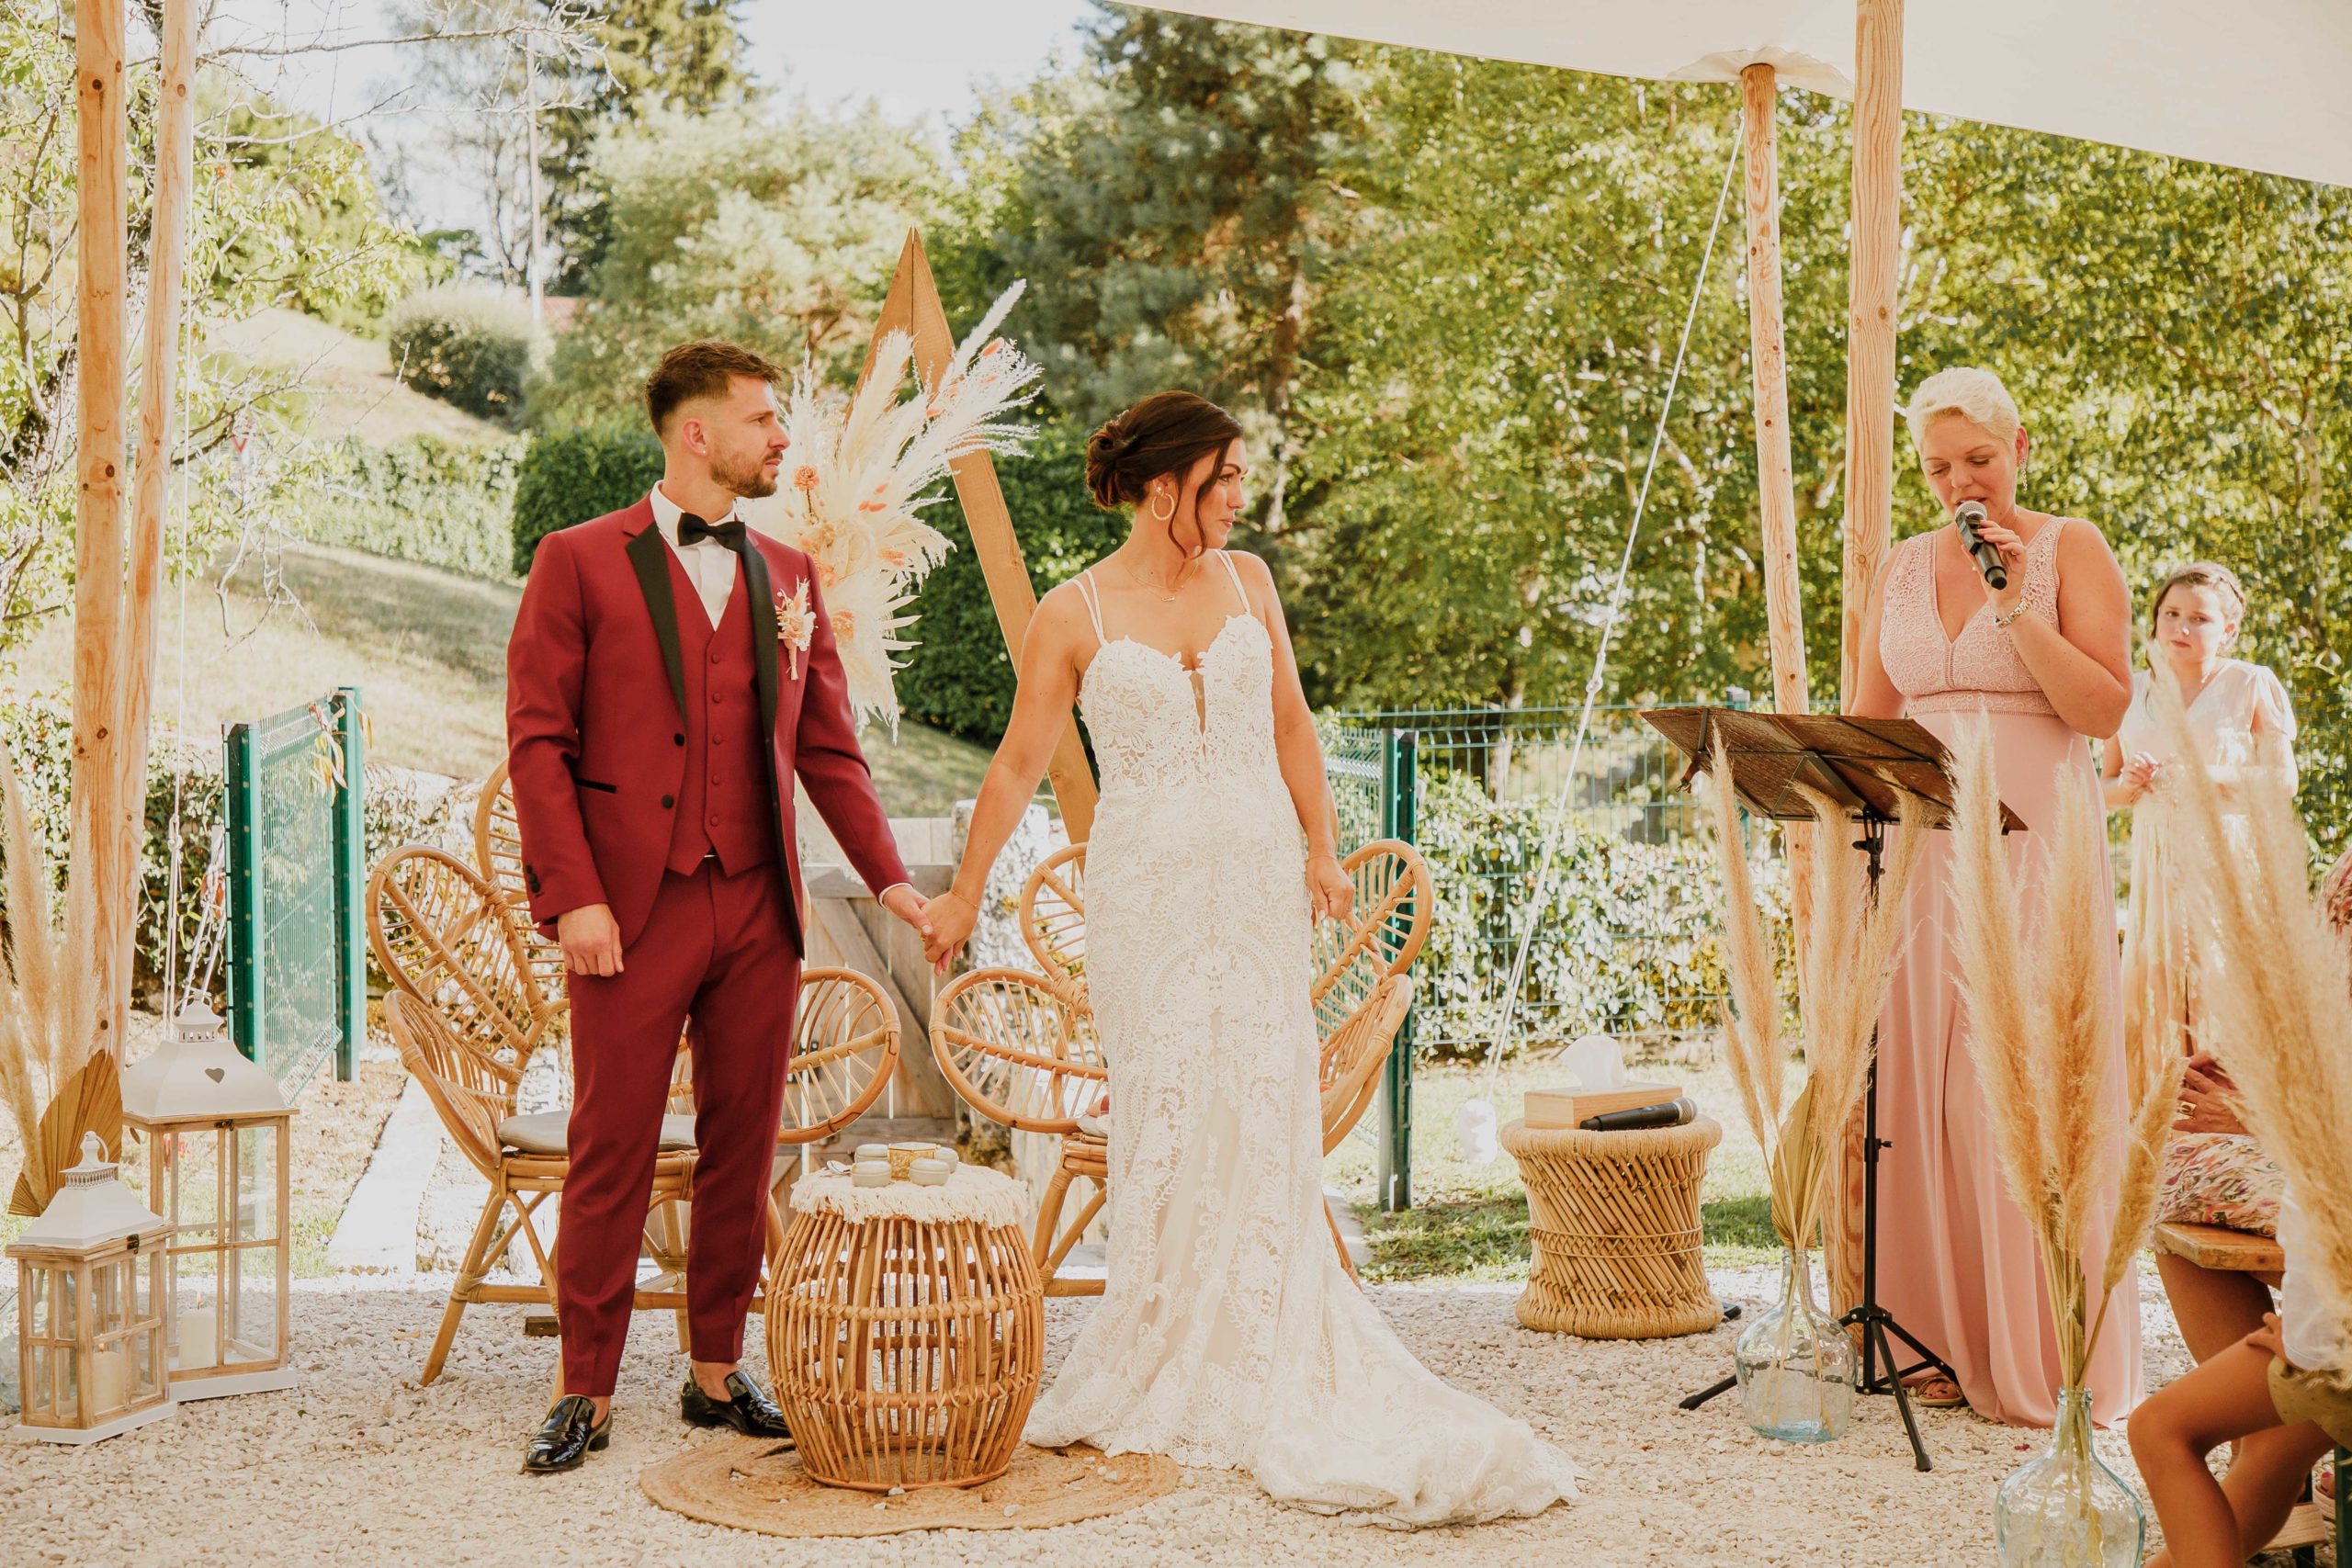 Le mariage de P & A en août 2022 célébrée par Danièle Cusin au Domaine de la Croix des Champs, à Veyrier-du-Lac en Haute-Savoie.